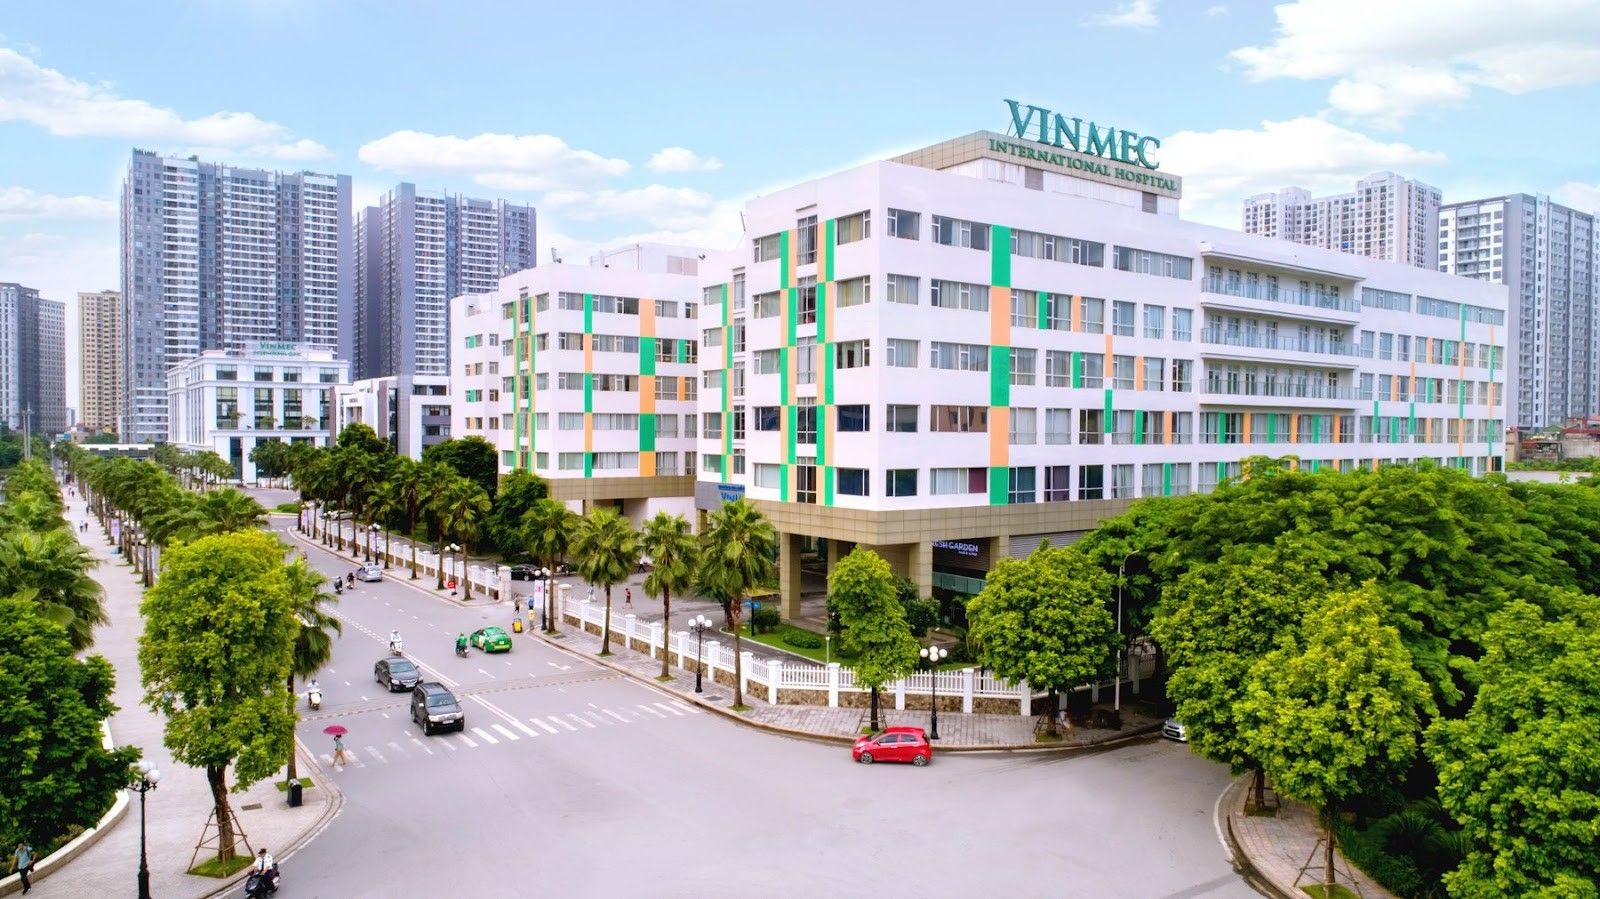 Chung cư VP5 Linh Đàm quận Hoàng Mai cách bệnh viện Vinmec bao nhiêu km?